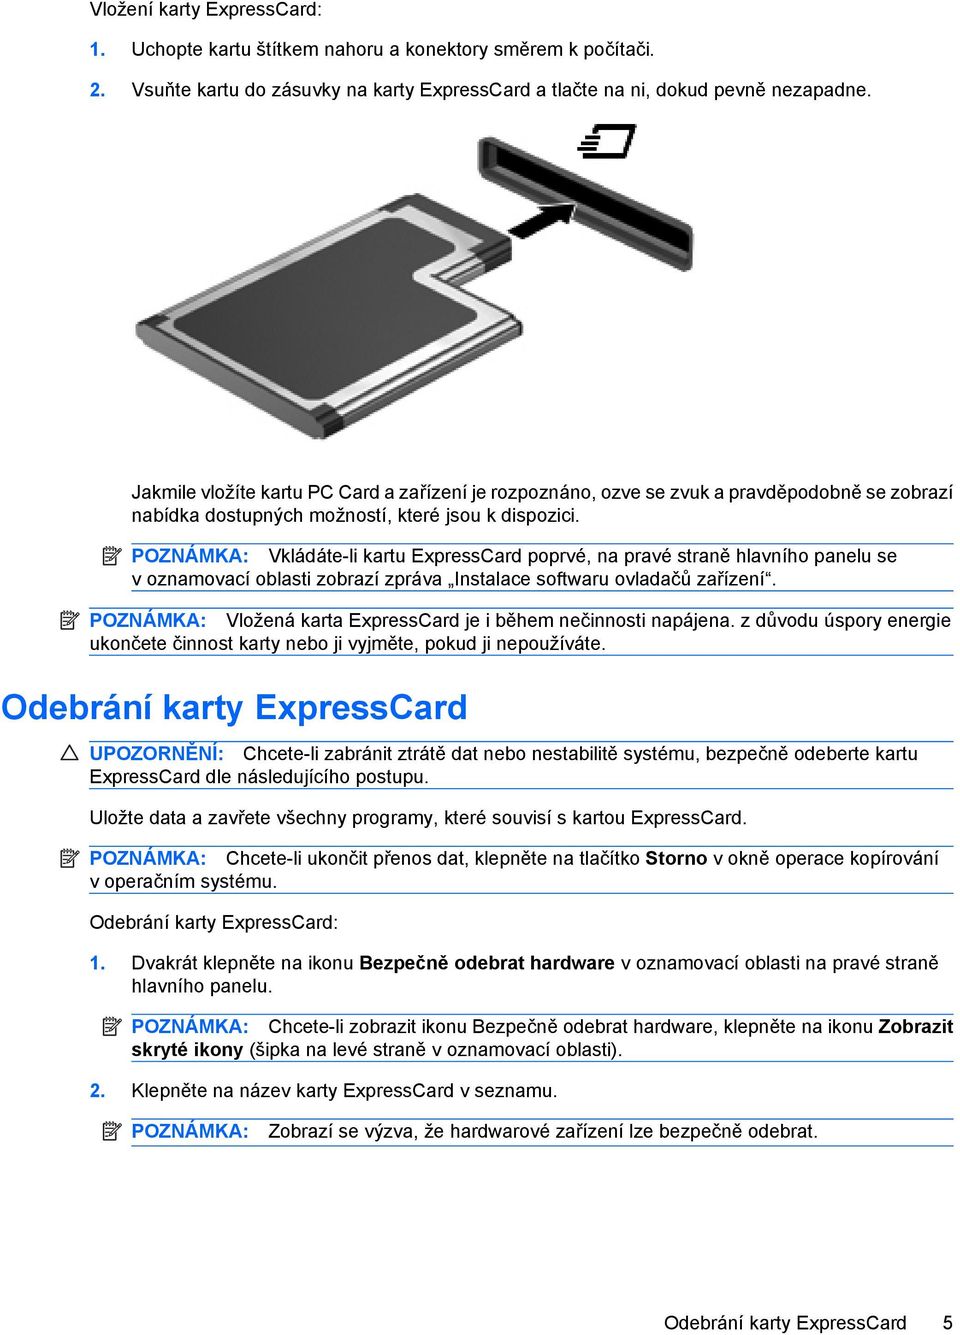 POZNÁMKA: Vkládáte-li kartu ExpressCard poprvé, na pravé straně hlavního panelu se v oznamovací oblasti zobrazí zpráva Instalace softwaru ovladačů zařízení.